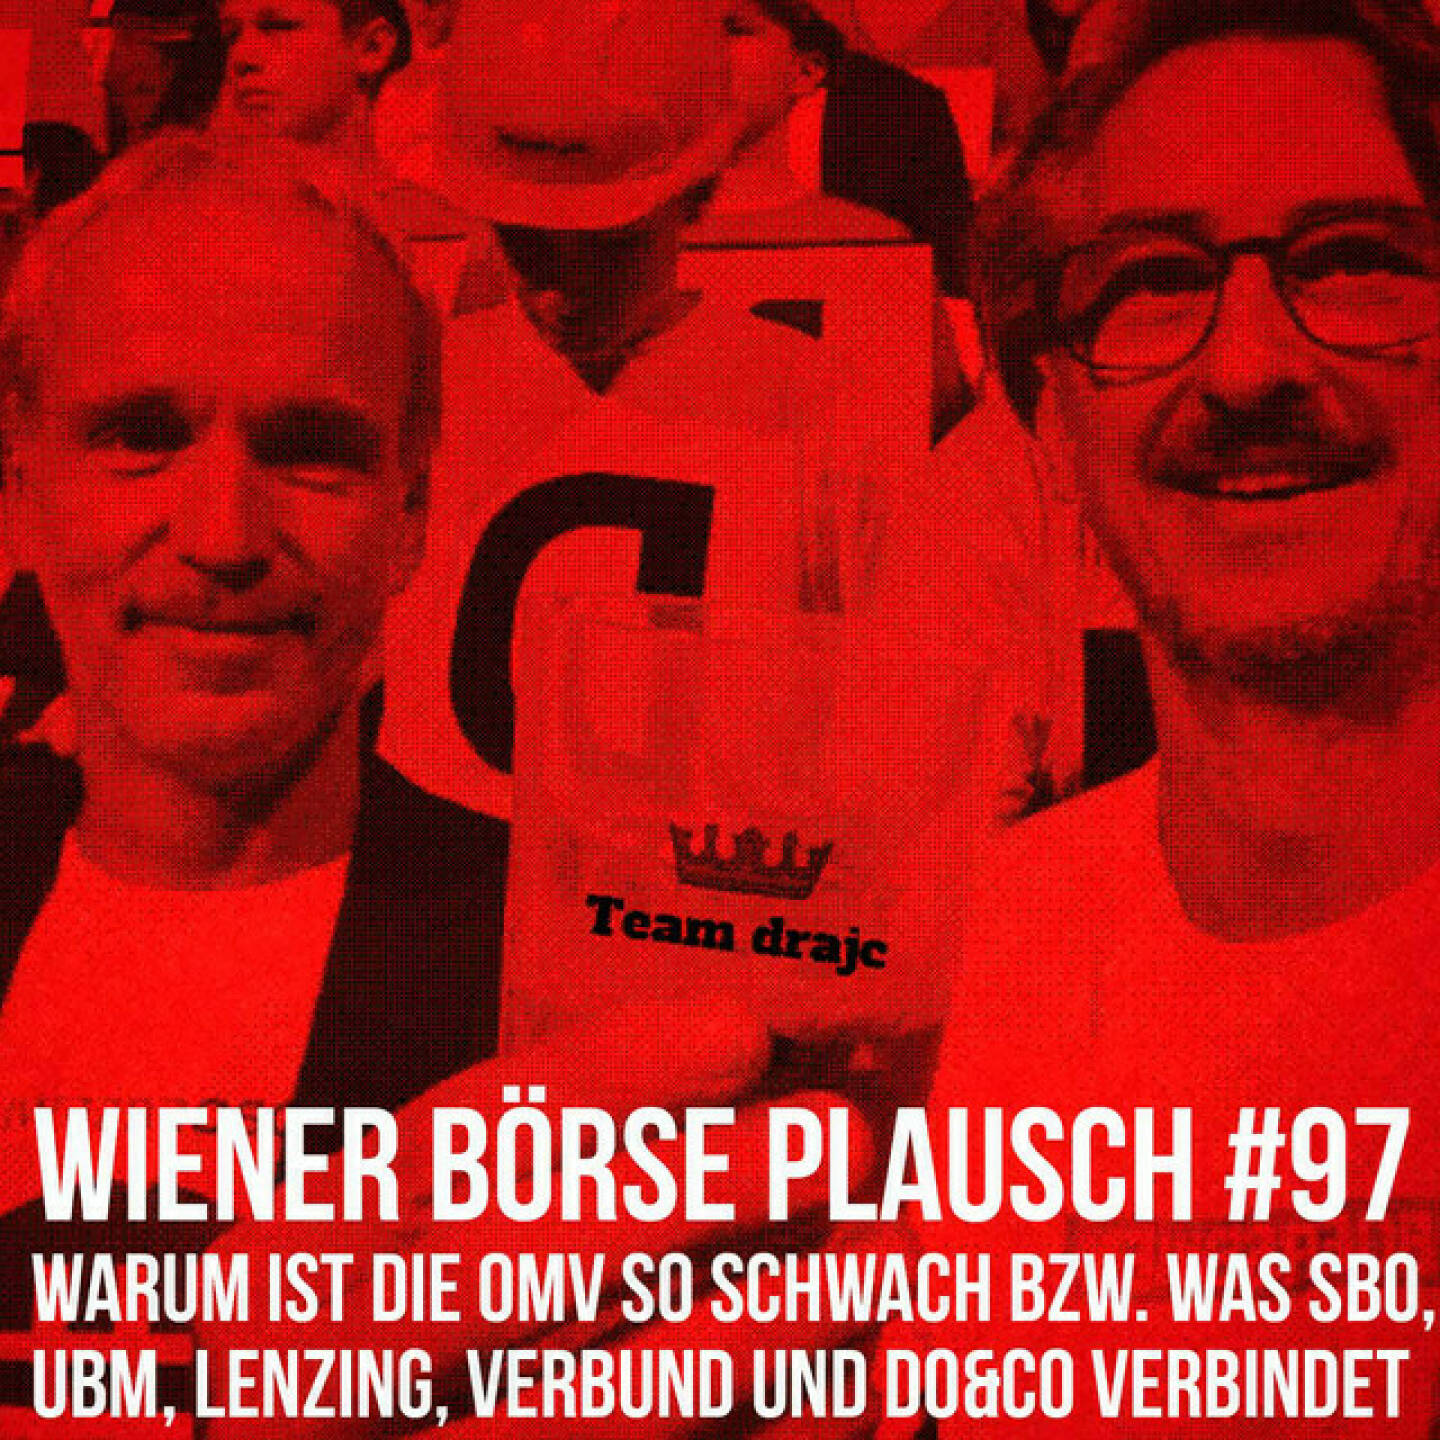 https://open.spotify.com/episode/5SkfptZ6FKUo4qLMEtwtW2
Wiener Börse Plausch #97: Warum ist die OMV so schwach bzw. was SBO, UBM, Lenzing, Verbund und Do&Co verbindet - <p>Team drajc, das sind die Börse Social Network Eigentümer Christian Drastil und Josef Chladek, quatscht im Wiener Börse Plausch #97 auch heute mit einem dra-Solo: Ein super Tag mit Banken vorne, aber einer - trotz gefühlt guter neuer Story - überraschend schwachen OMV. Weiters: Was SBO, UBM, Lenzing, Verbund und Do&amp;Co verbindet.</p><br/><p>Erwähnt werden:<br/>UBM-CEO Winkler spricht mit Reinhold Messner: <br/>Trailer: <a href=https://lnkd.in/evpFuxdT rel=nofollow>https://lnkd.in/evpFuxdT</a><br/>Langfassung des Gesprächs: <a href=https://lnkd.in/ez_XuyWZ rel=nofollow>https://lnkd.in/ez_XuyWZ</a></p><br/><p>Die 2022er-Folgen vom Wiener Börse Plausch sind präsentiert von Wienerberger, CEO Heimo Scheuch hat sich im Q4 ebenfalls unter die Podcaster gemischt: <a href=https://open.spotify.com/show/5D4Gz8bpAYNAI6tg7H695E rel=nofollow>https://open.spotify.com/show/5D4Gz8bpAYNAI6tg7H695E</a> . Co-Presenter im März ist Trockeneis-online.com, siehe auch die überarbeitete <a href=https://boersenradio.at rel=nofollow>https://boersenradio.at</a><br/>Der Theme-Song, der eigentlich schon aus dem Jänner stammt und spontan von der Rosinger Group supportet wurde: Sound &amp; Lyrics unter <a href=https://boersenradio.at/page/podcast/2734/ rel=nofollow>https://boersenradio.at/page/podcast/2734/</a> .</p><br/><p>Risikohinweis: Die hier veröffentlichten Gedanken sind weder als Empfehlung noch als ein Angebot oder eine Aufforderung zum An- oder Verkauf von Finanzinstrumenten zu verstehen und sollen auch nicht so verstanden werden. Sie stellen lediglich die persönliche Meinung der Podcastmacher dar. Der Handel mit Finanzprodukten unterliegt einem Risiko. Sie können Ihr eingesetztes Kapital verlieren.</p>